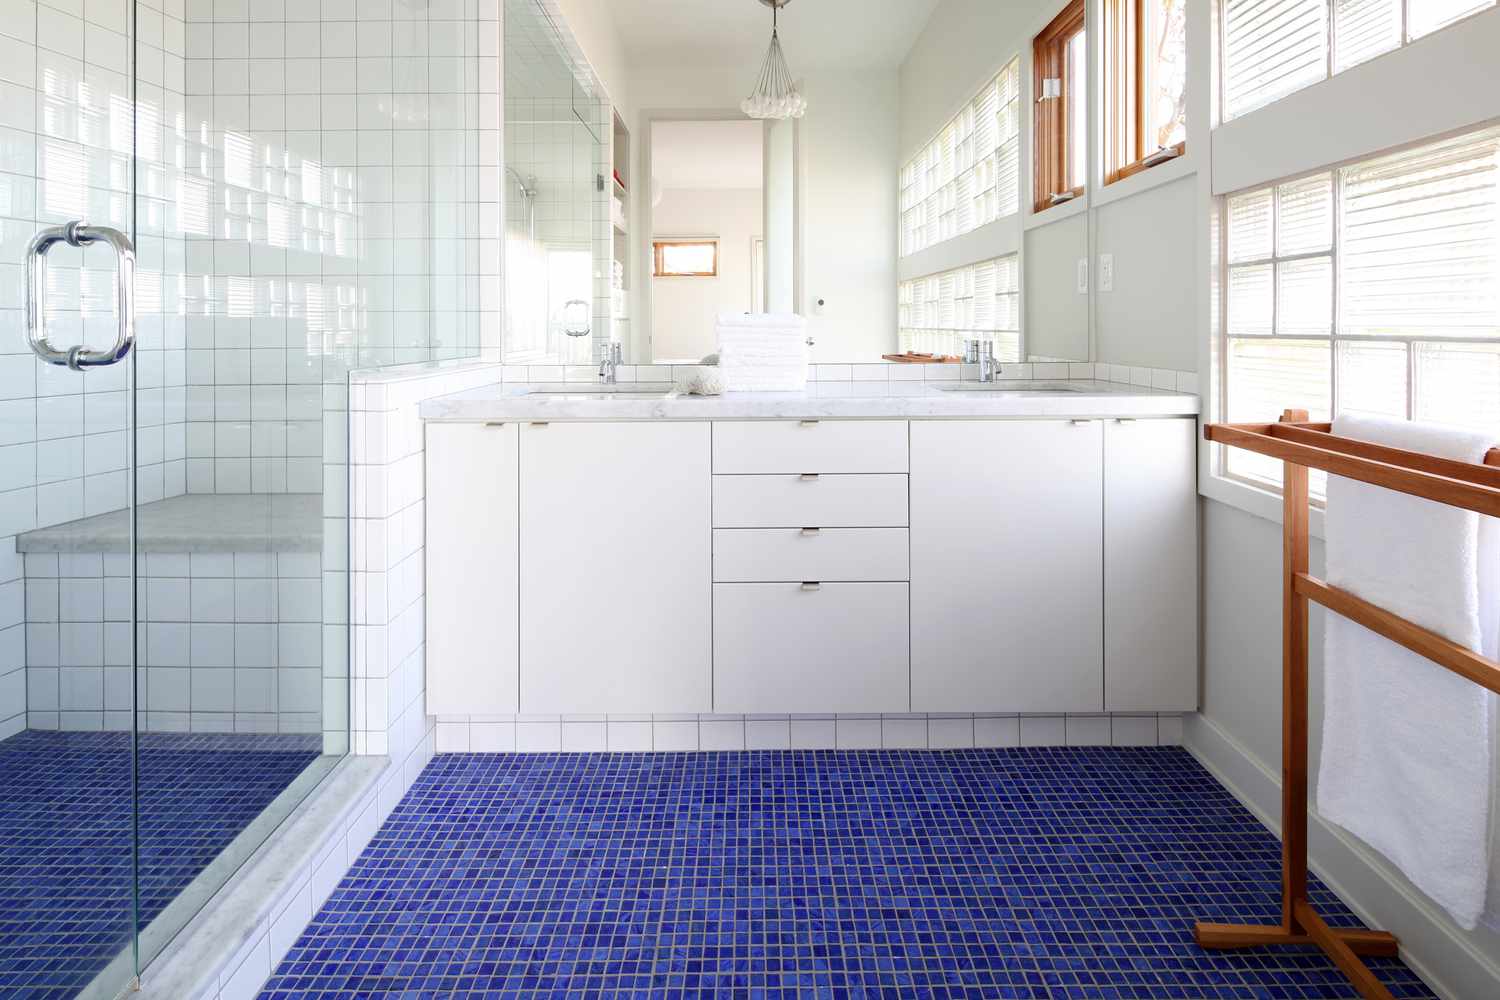 piso de mosaico em banheiro